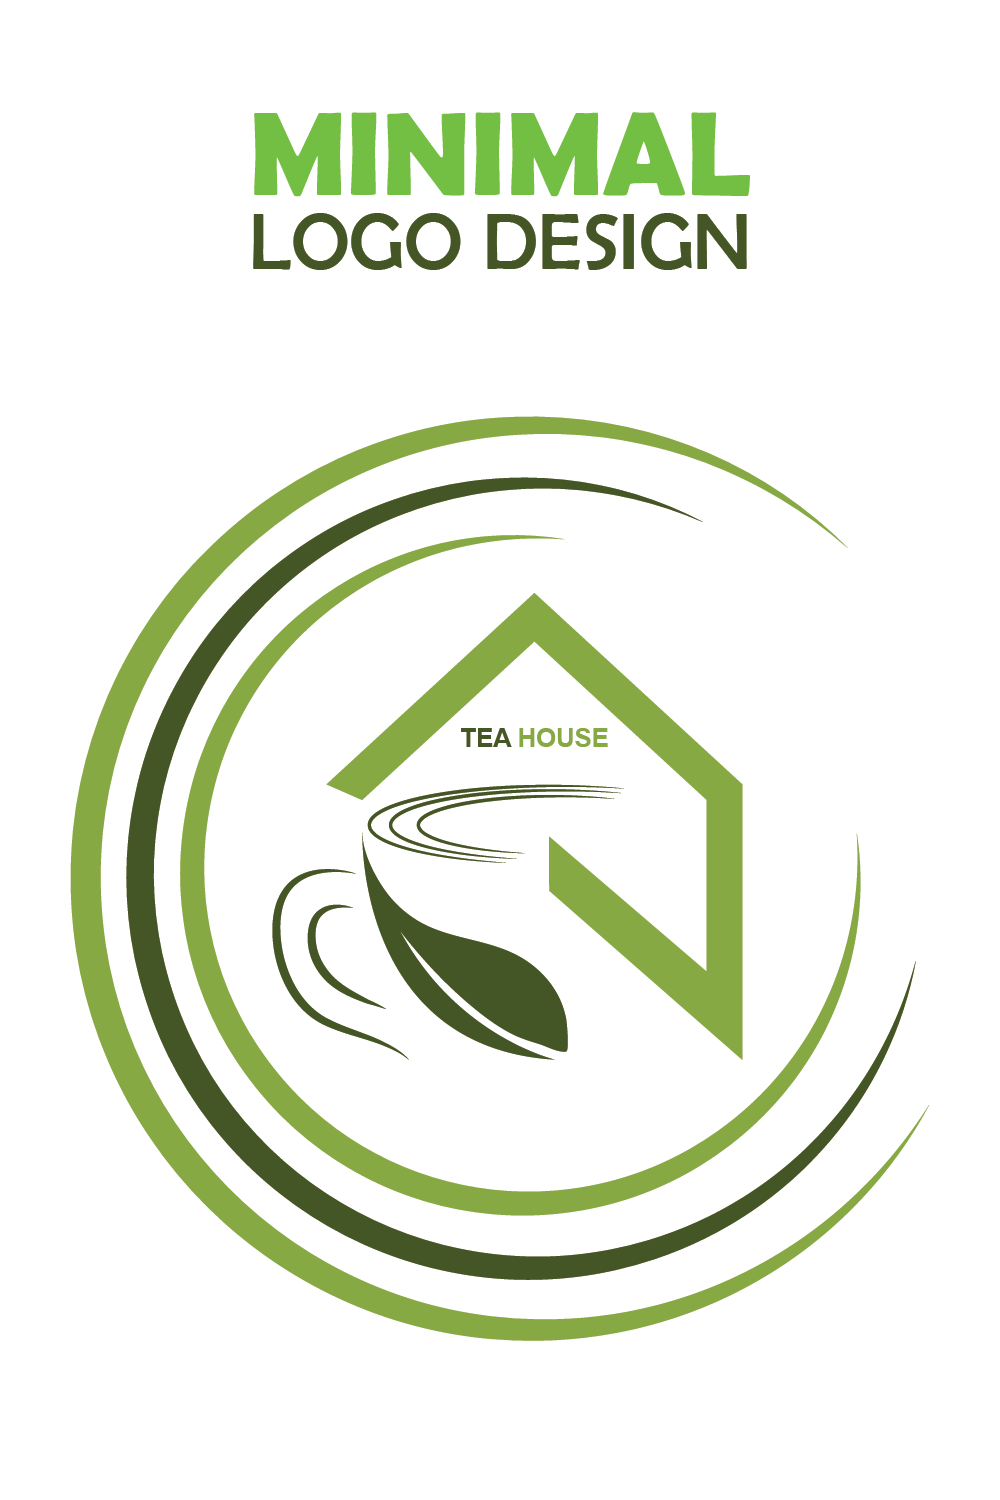 unique and professional tea shop or tea house logo design template pinterest preview image.